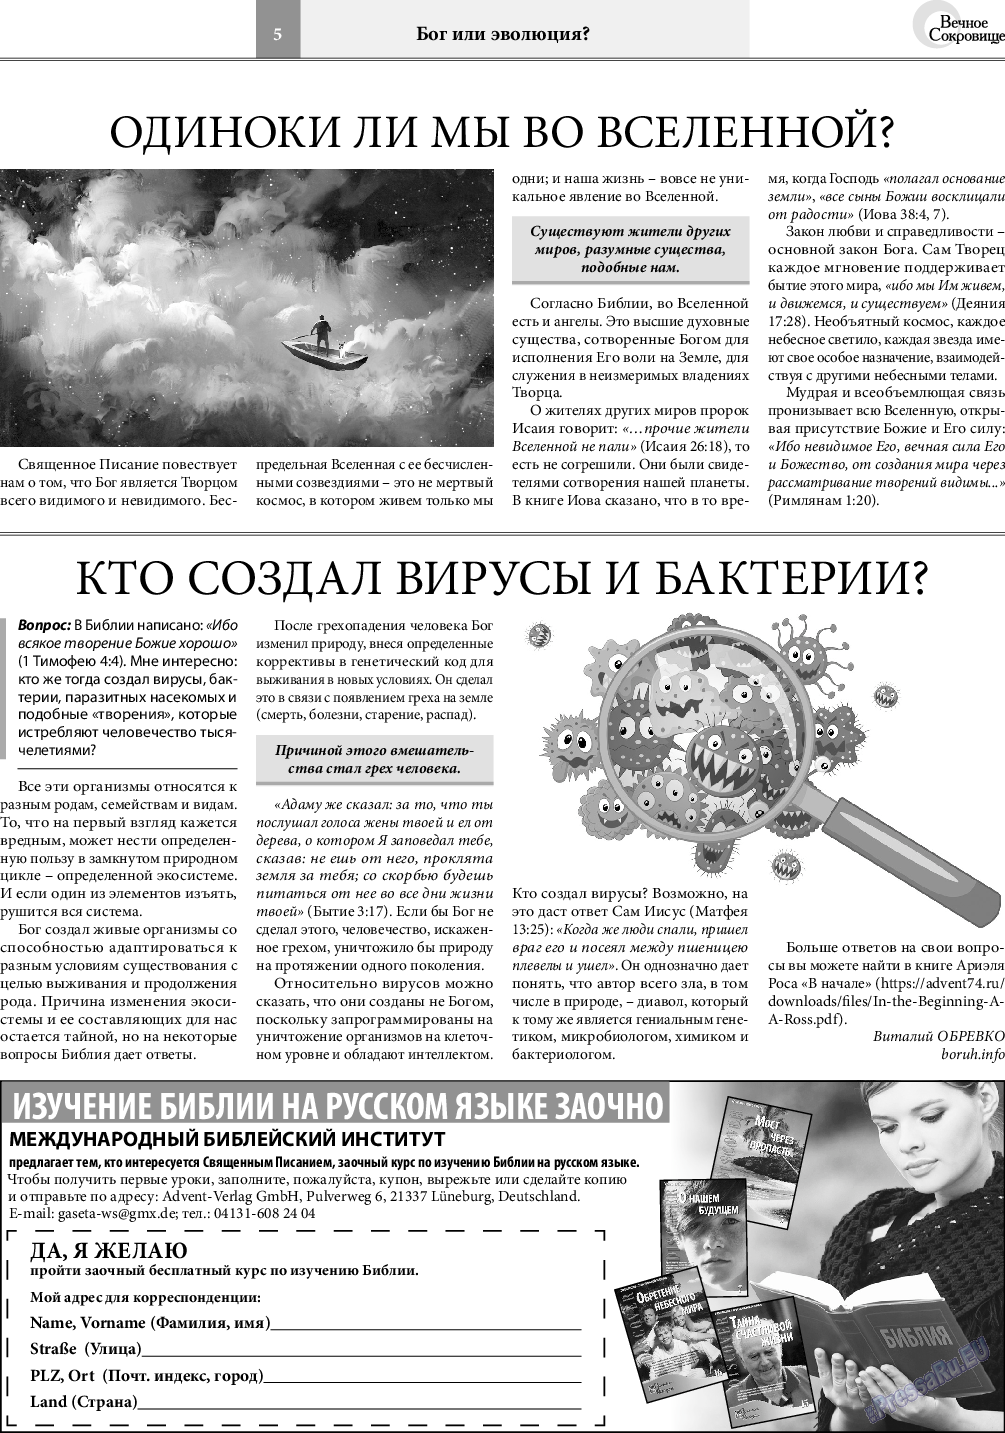 Вечное сокровище, газета. 2021 №4 стр.5